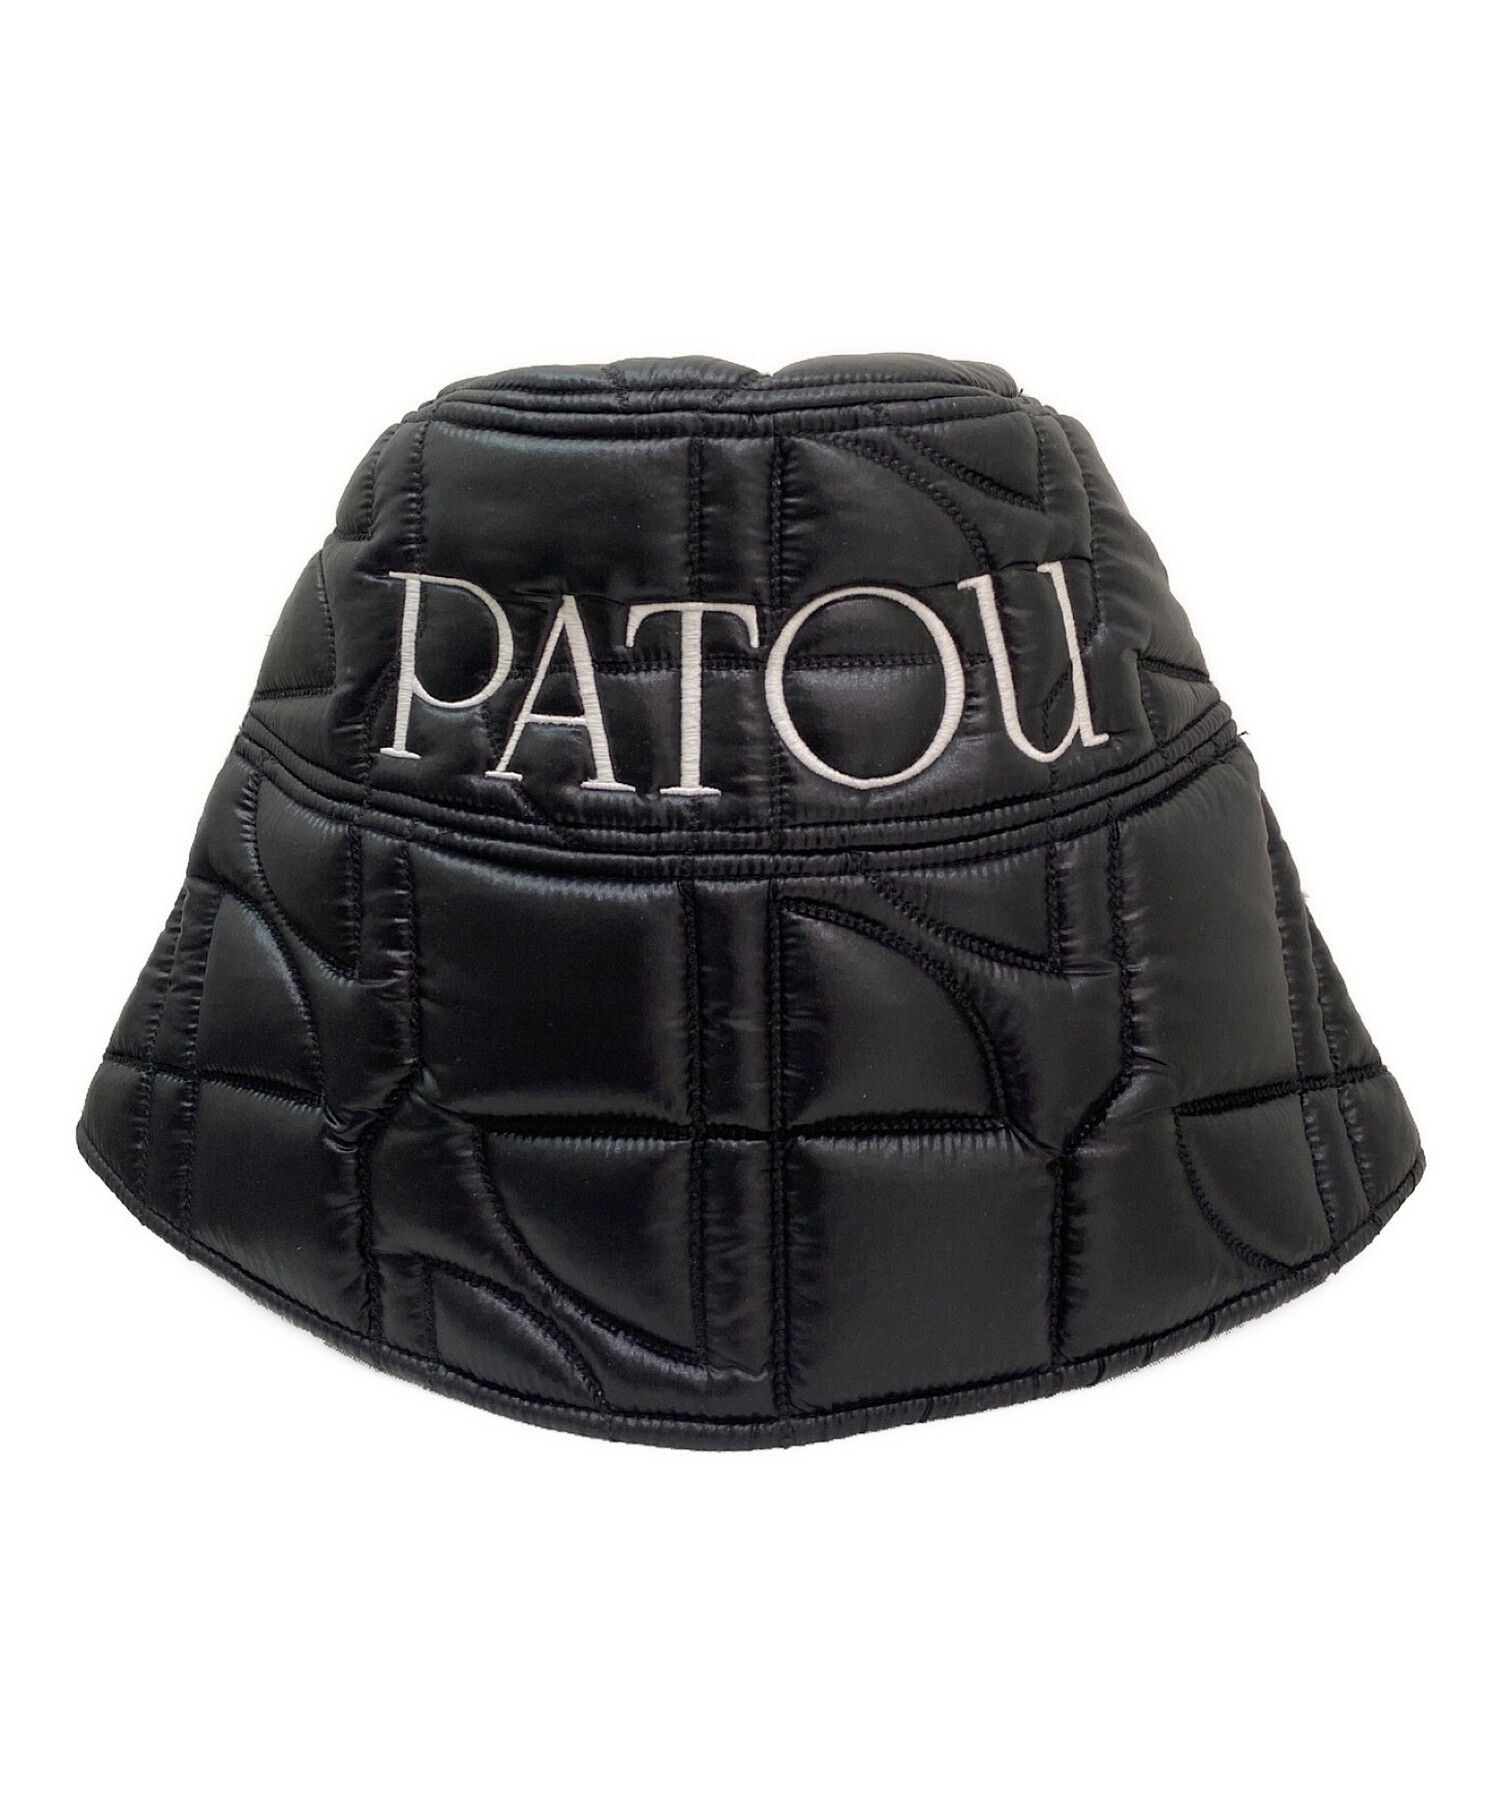 patou (パトゥ) キルティングバケットハット ブラック サイズ:ML